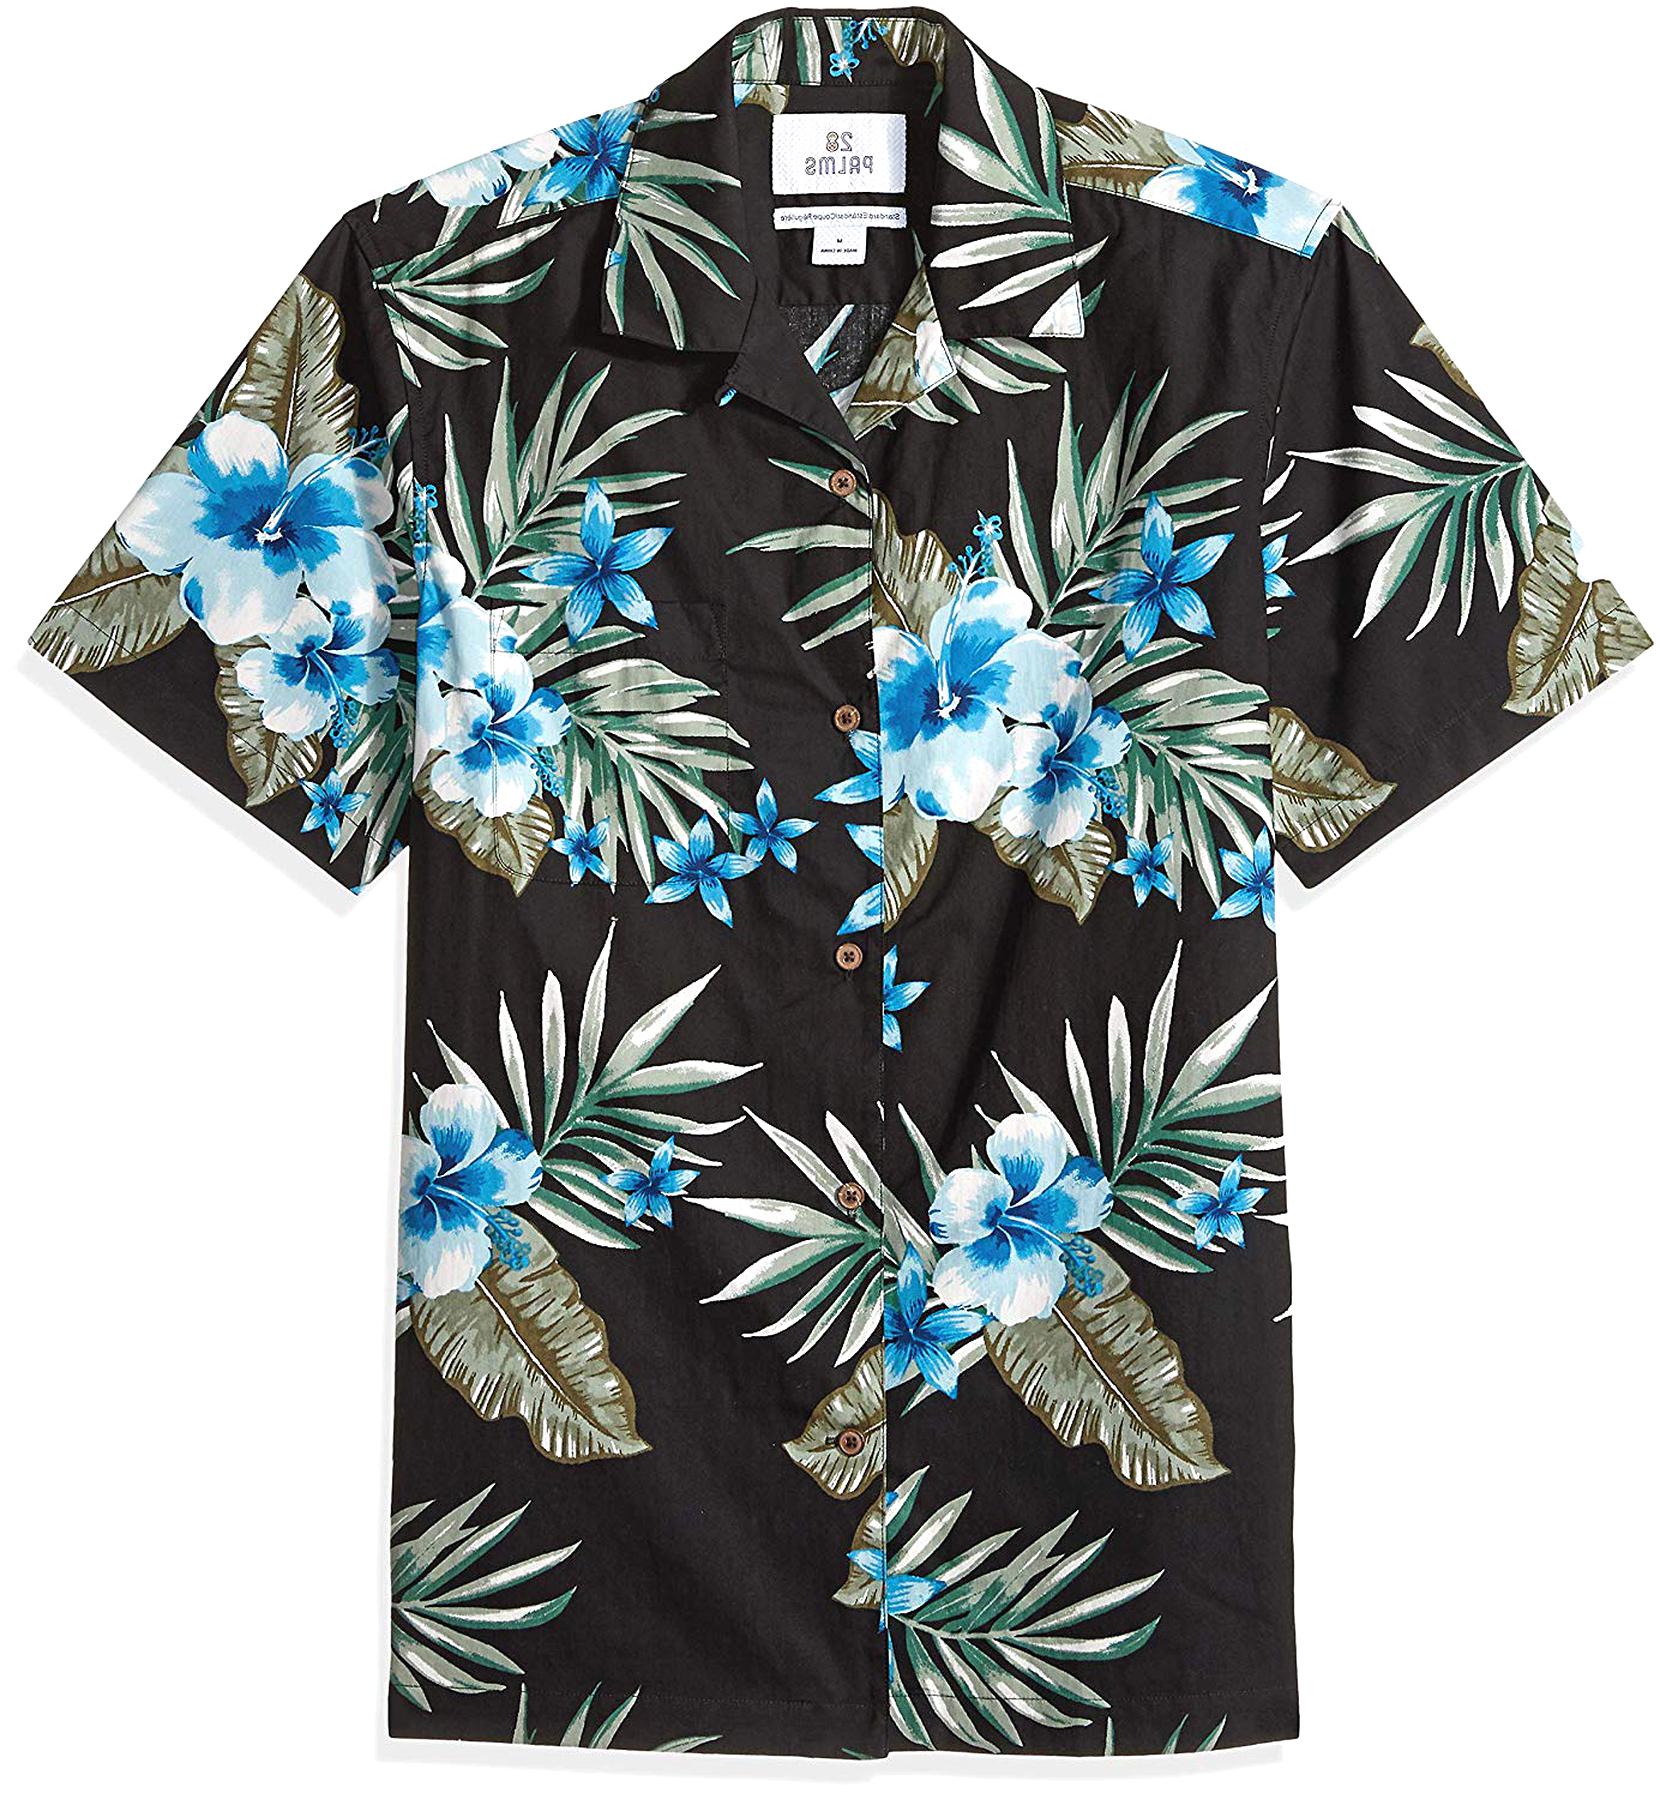 Hawaiian Shirt for sale in UK | 63 used Hawaiian Shirts